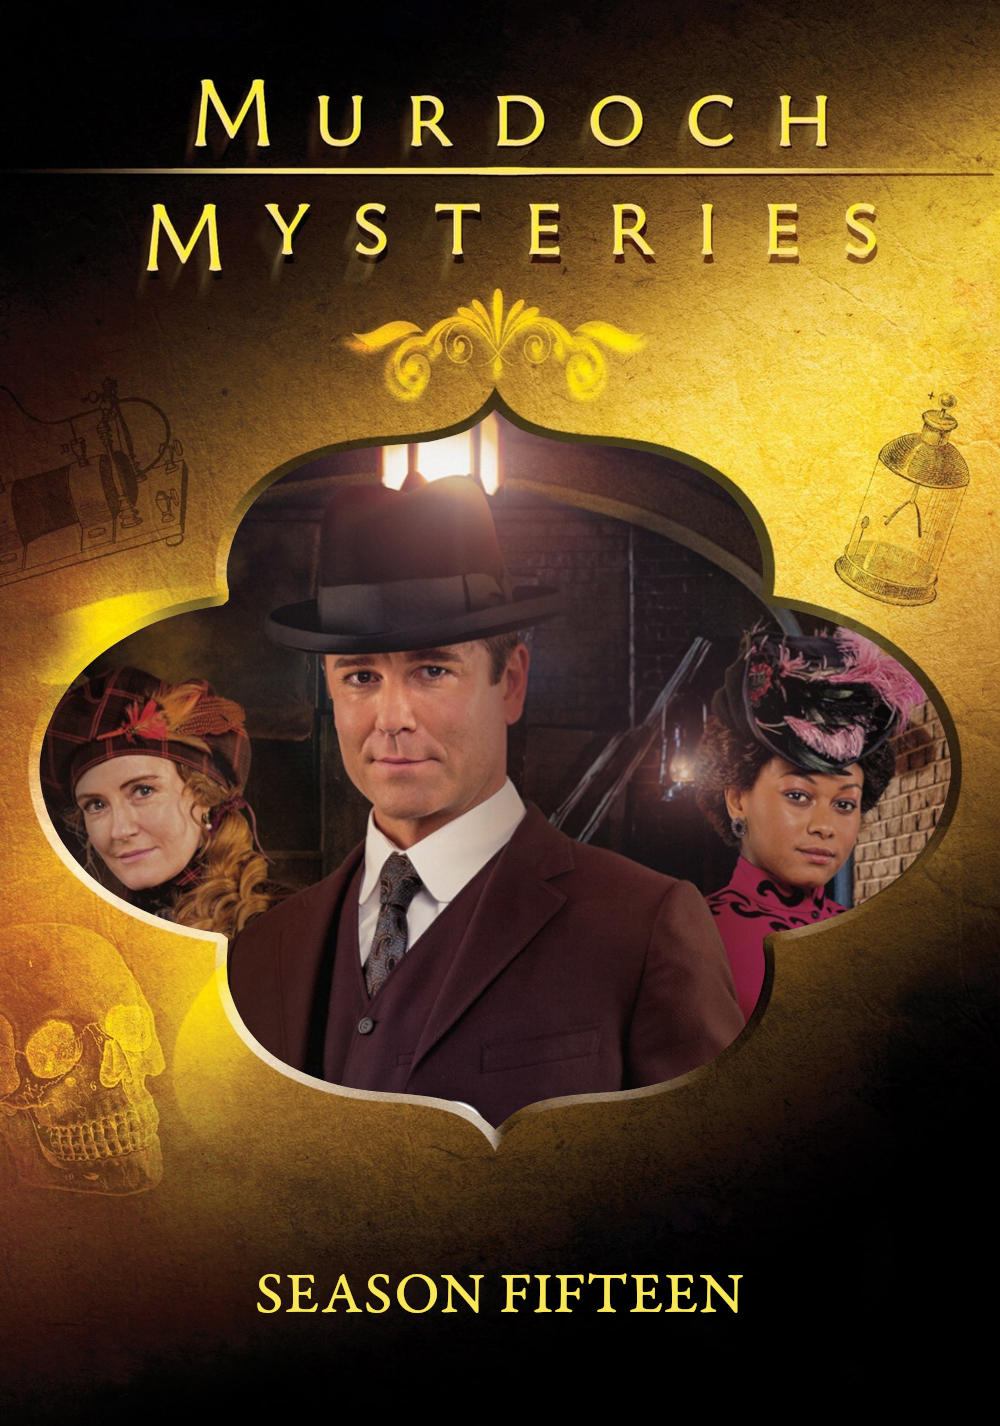 Murdoch Mysteries (2008) S15pt1 E01->E08 NLsubs